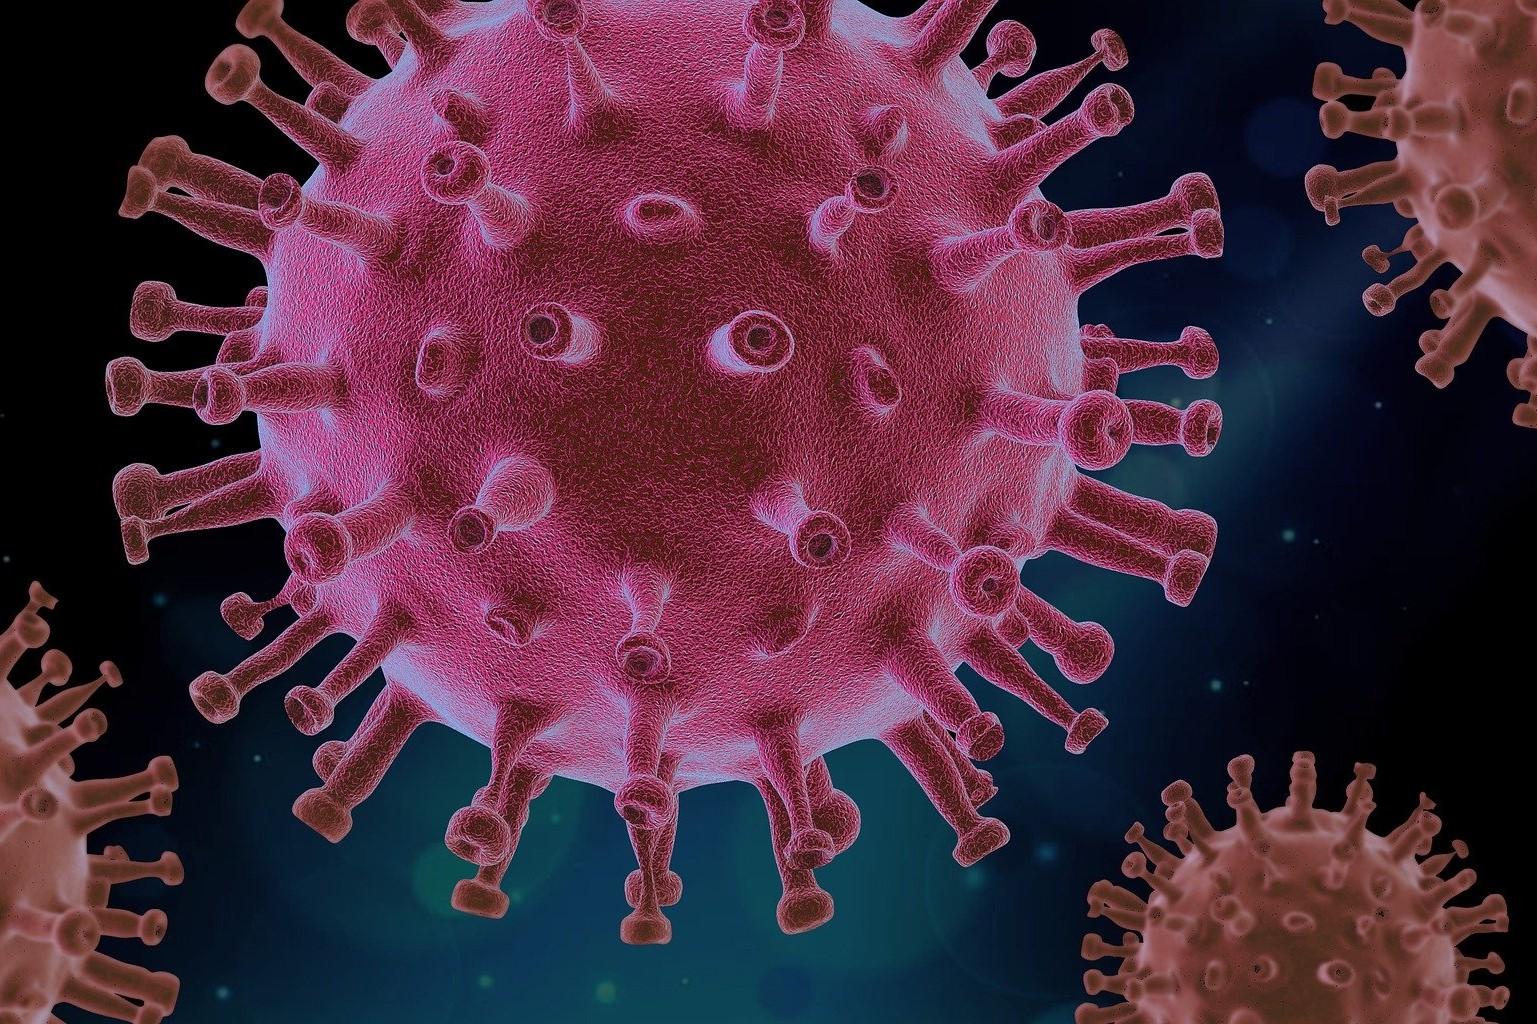 Coronavirus, Quelle: Bild von PIRO4D auf Pixabay